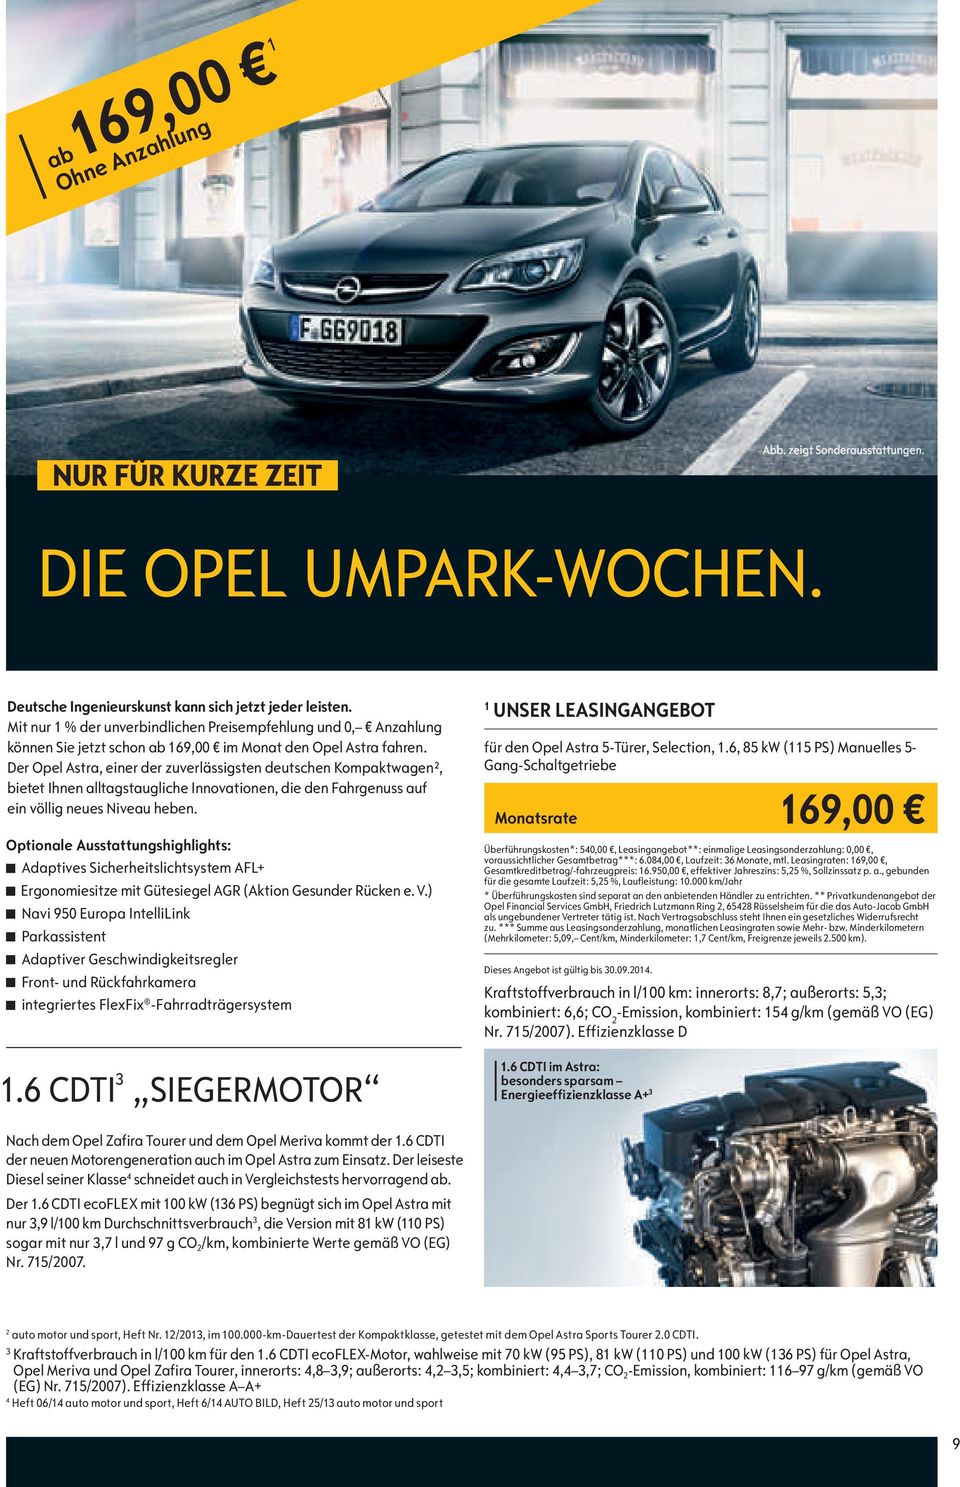 Der Opel Astra, einer der zuverlässigsten deutschen Kompaktwagen², bietet Ihnen alltagstaugliche Innovationen, die den Fahrgenuss auf ein völlig neues Niveau heben.